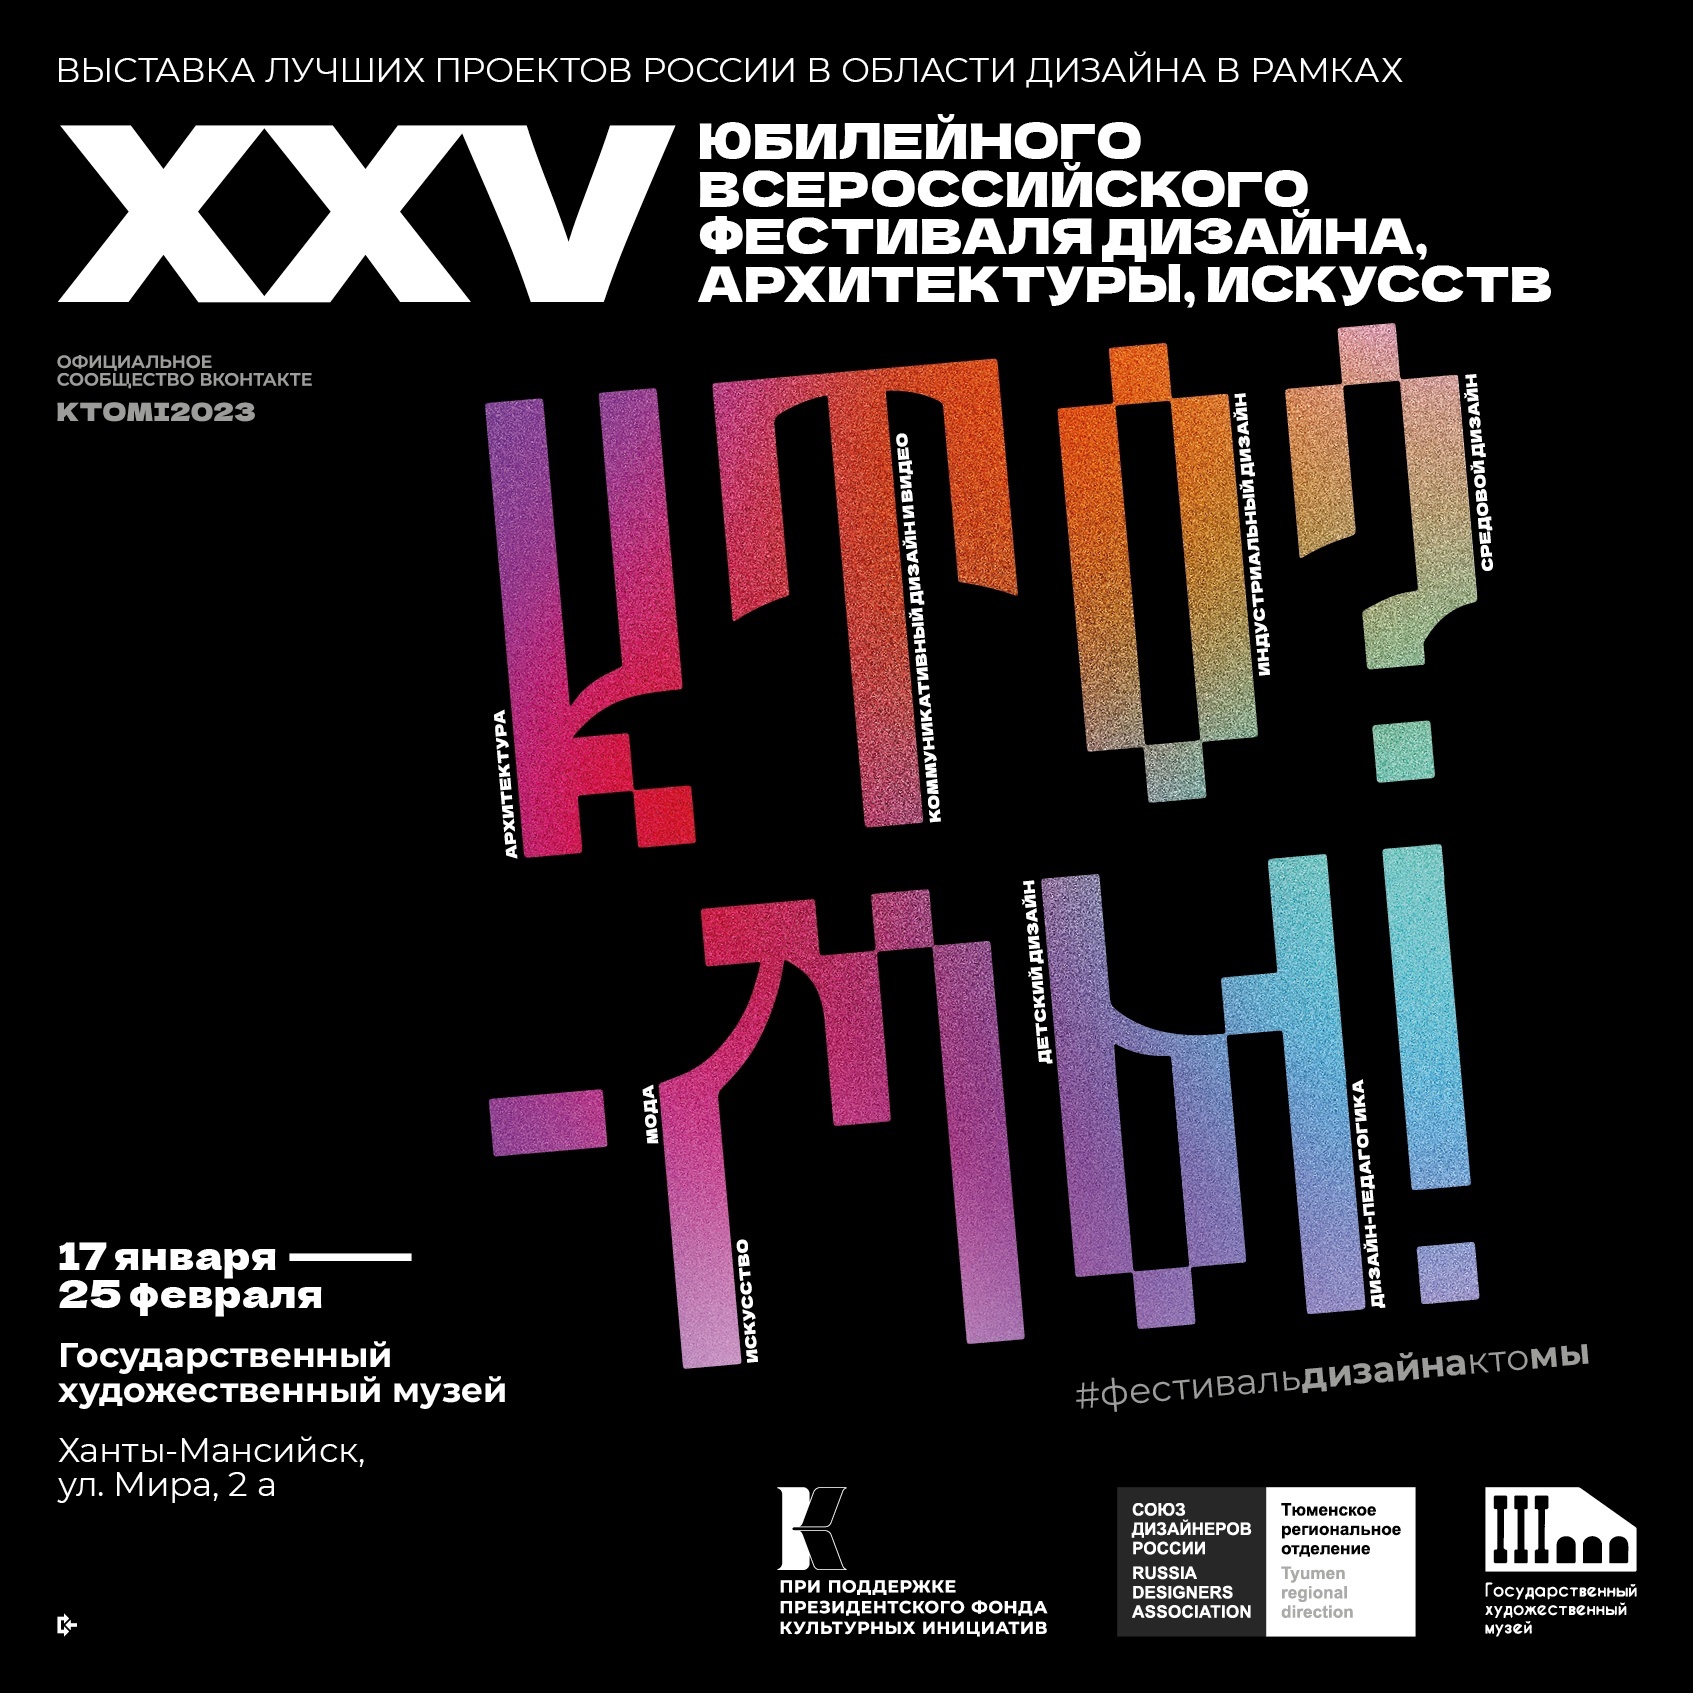 Познакомиться с современными тенденциями в искусстве можно будет на выставке лучших проектов России в области дизайна «КТО? - МЫ!» в Государственном художественном музее.